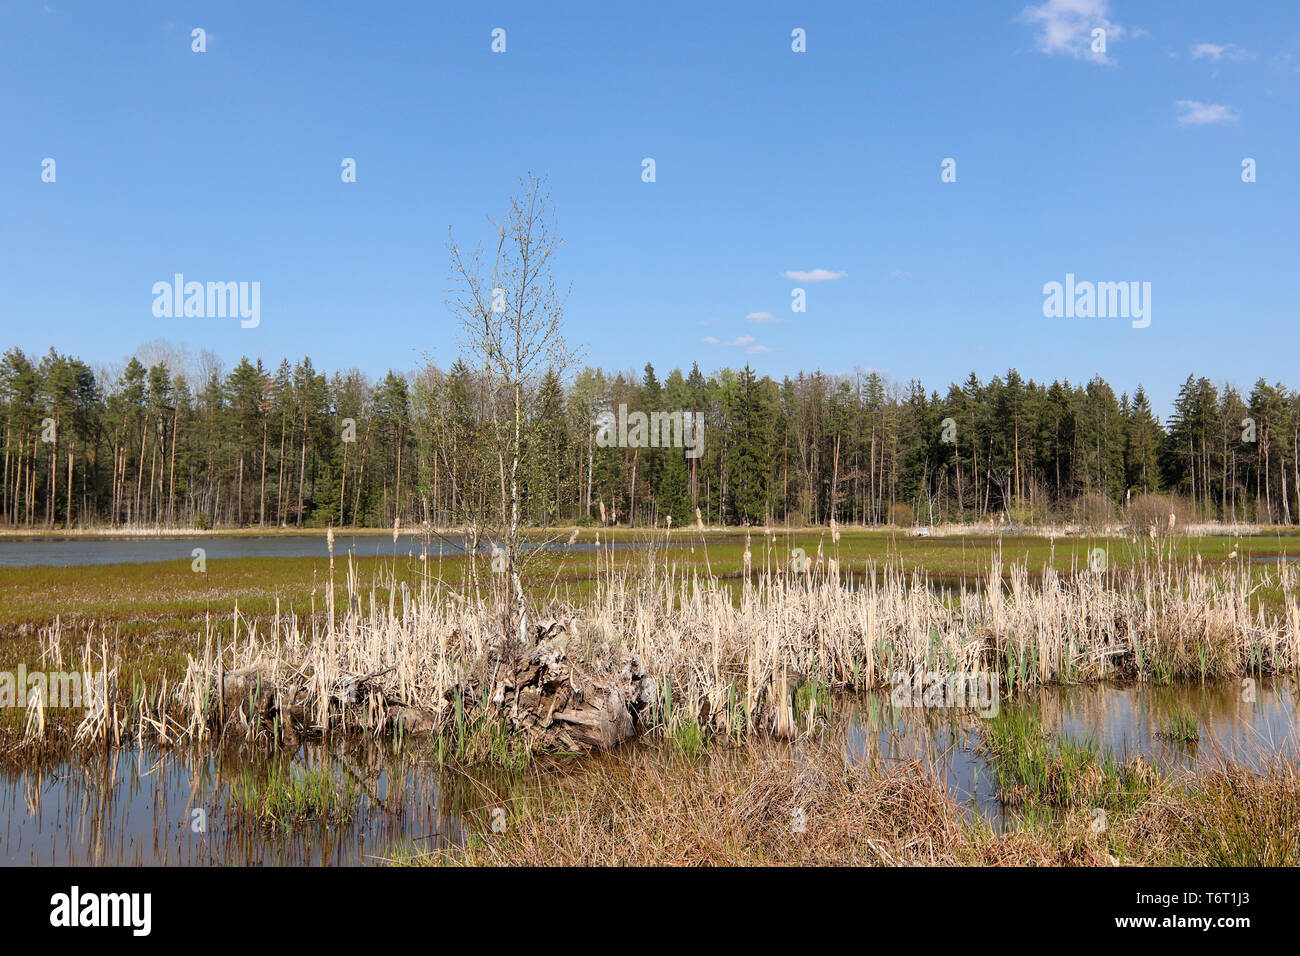 Pays paisible scène - étang dans la forêt, Centre, région, zone Kokot, République Tchèque Banque D'Images